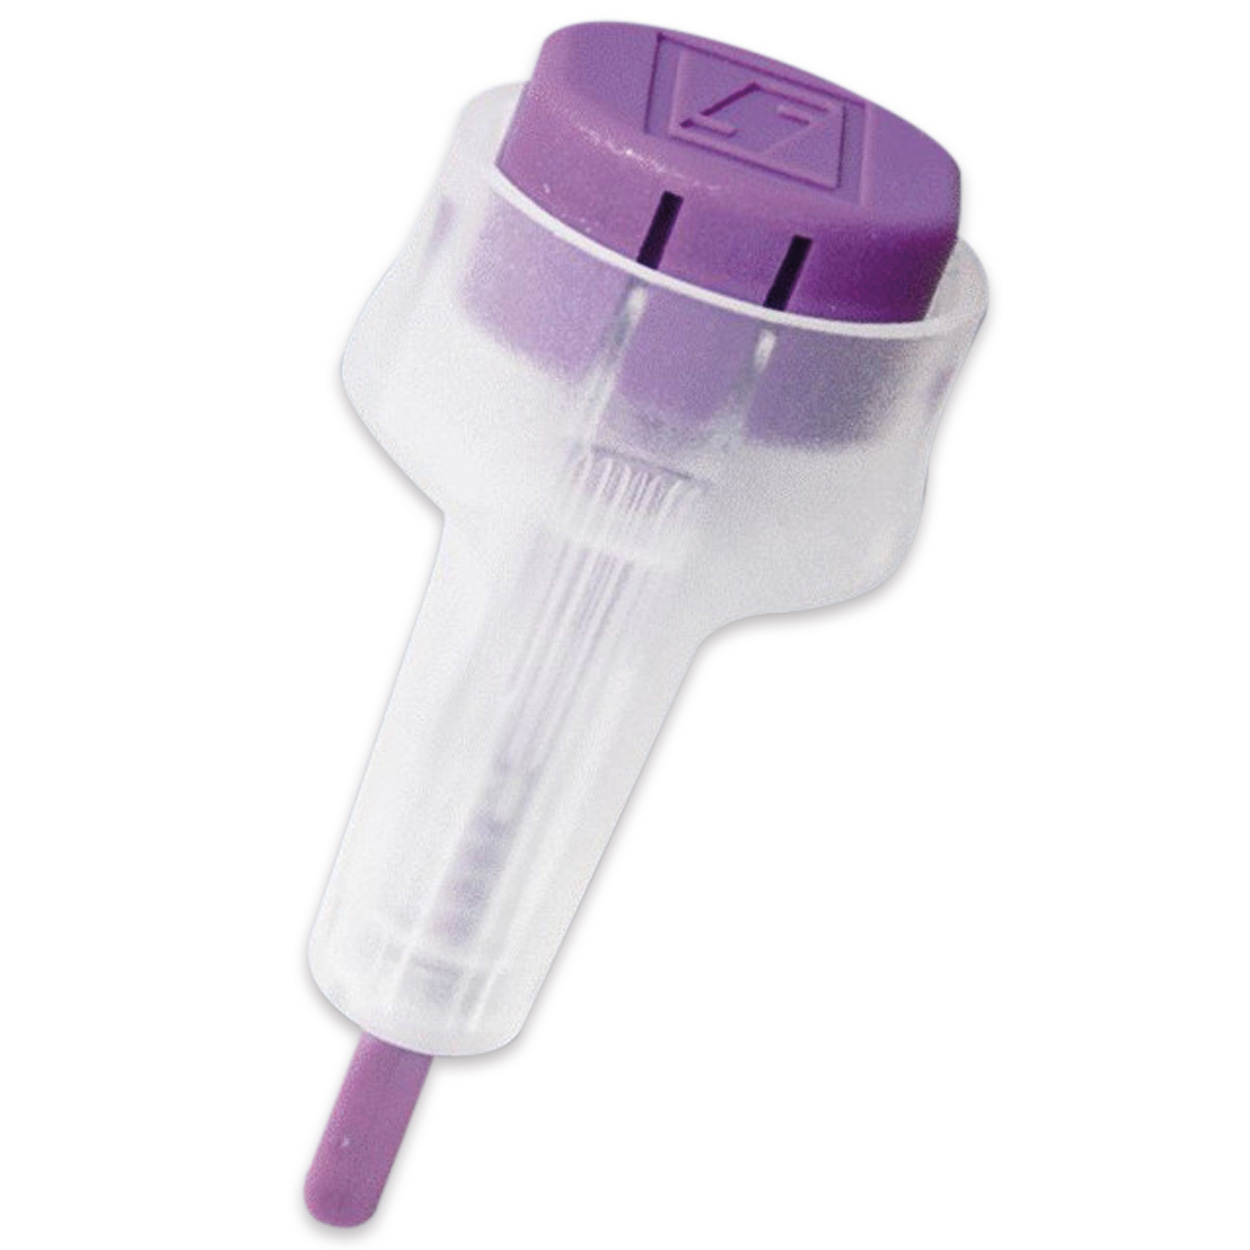 Safety-Lanzetten Super 18 G, Tiefe 1,6 mm, violett